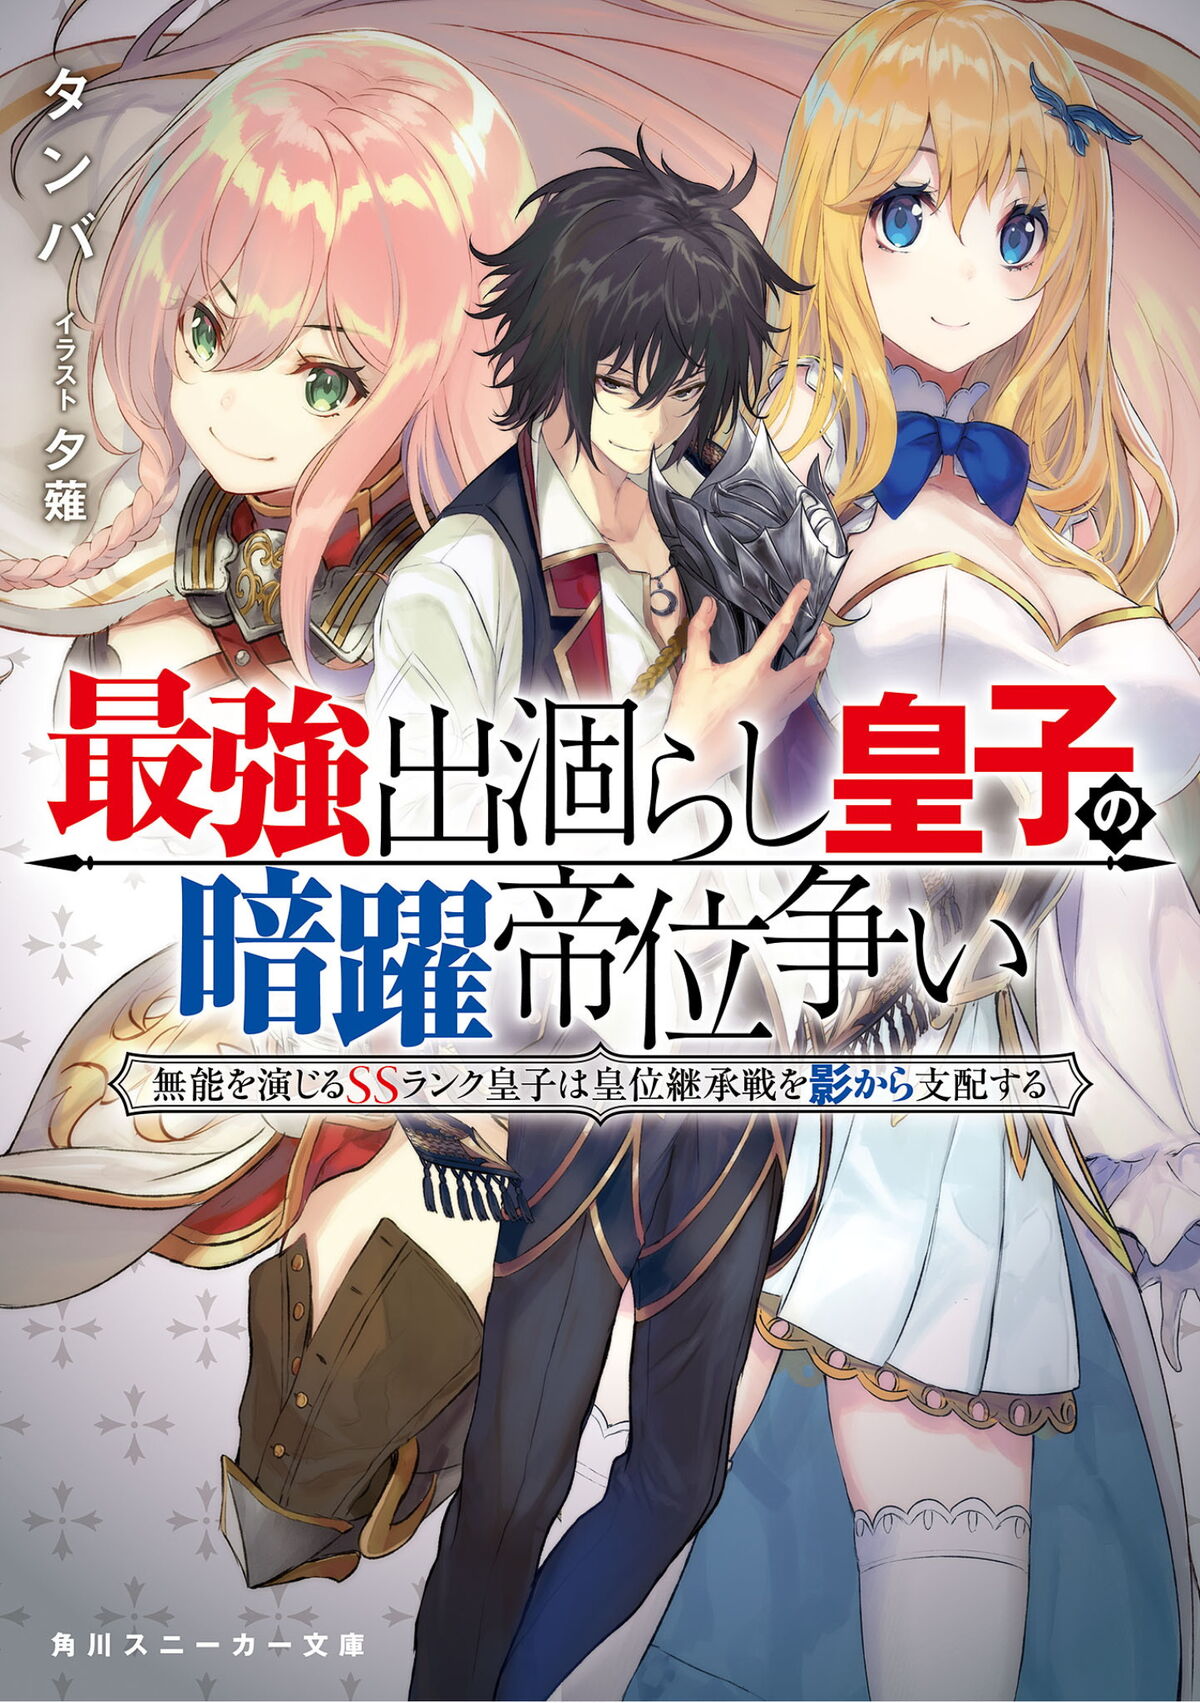 Light Novel Volume 1 | Saikyo Degarashi Ouji no Anyaku Teii Arasoi 